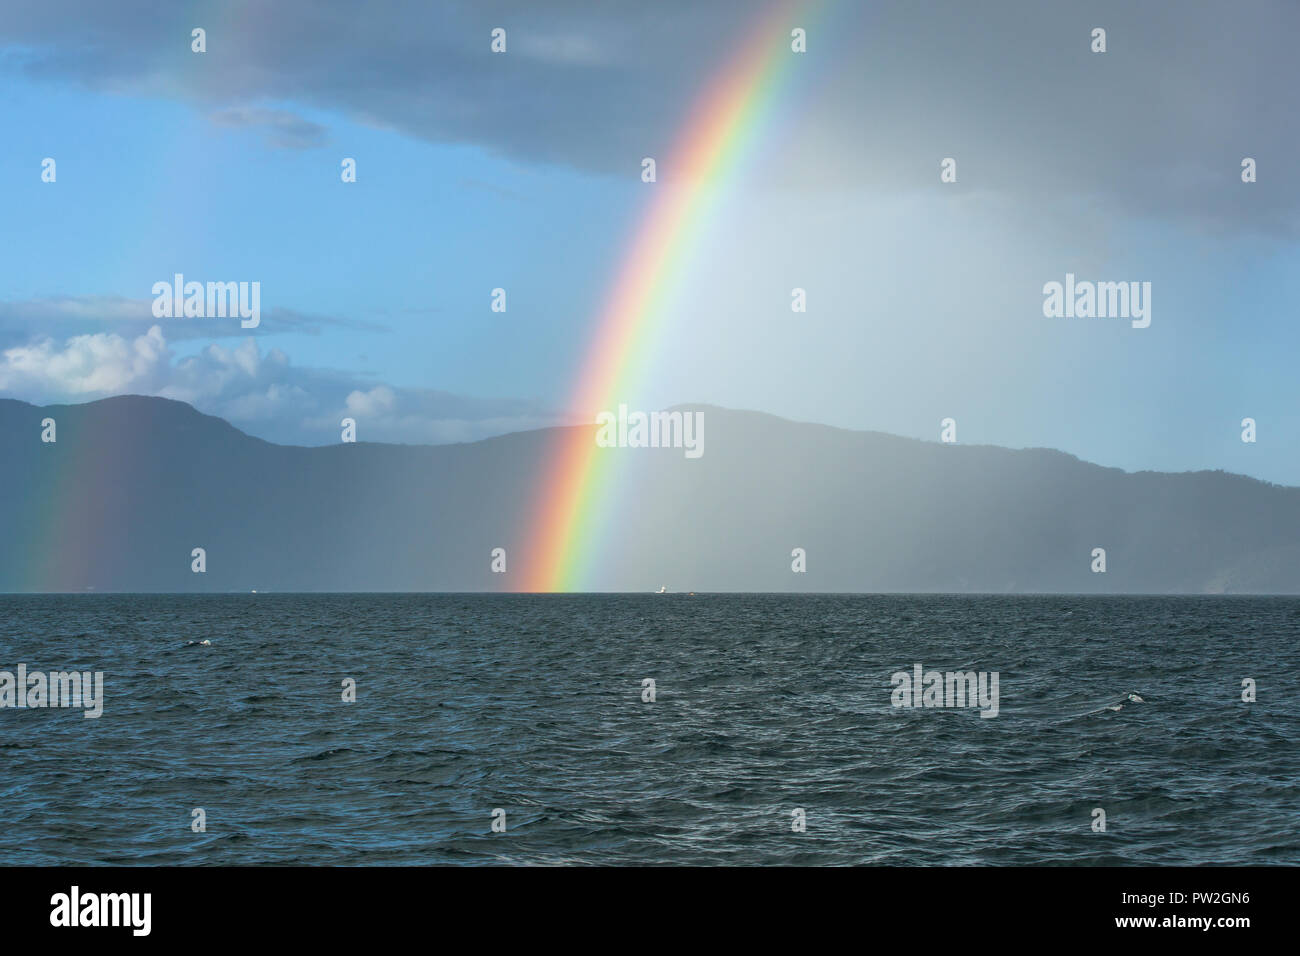 Rainbow over Water near False Cape, Cairns, Australia Stock Photo